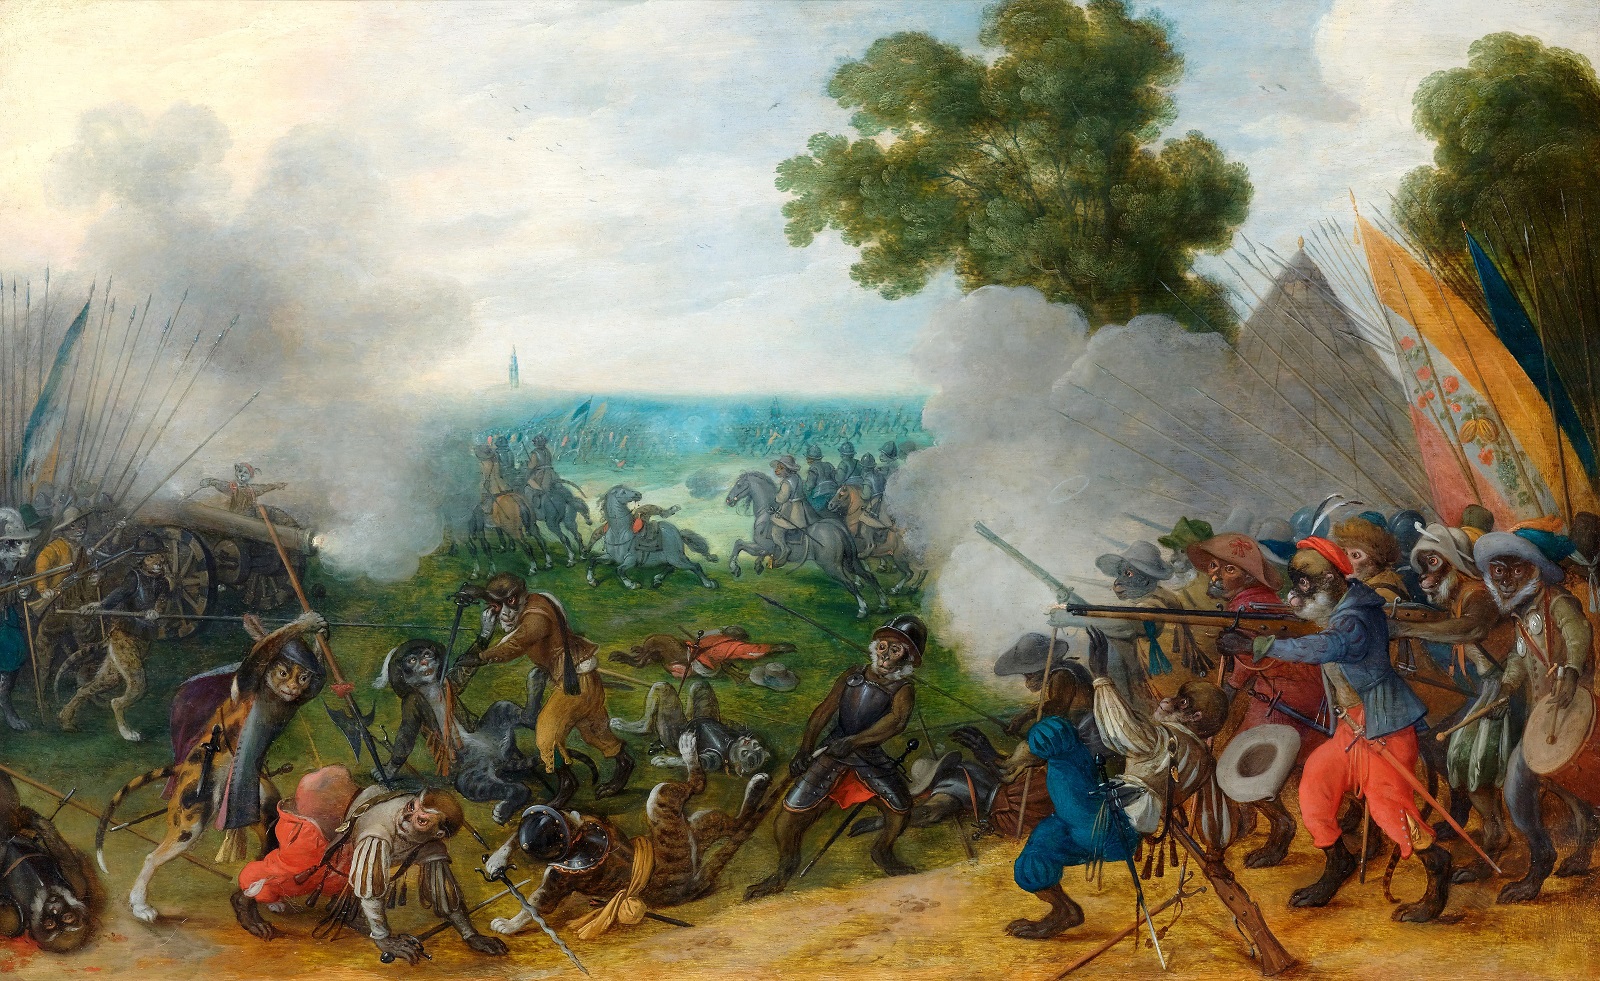 Себастьян Вранкс. Аллегорический бой между вооружёнными обезьянами и кошками во фламандском пейзаже, ок. 1630.